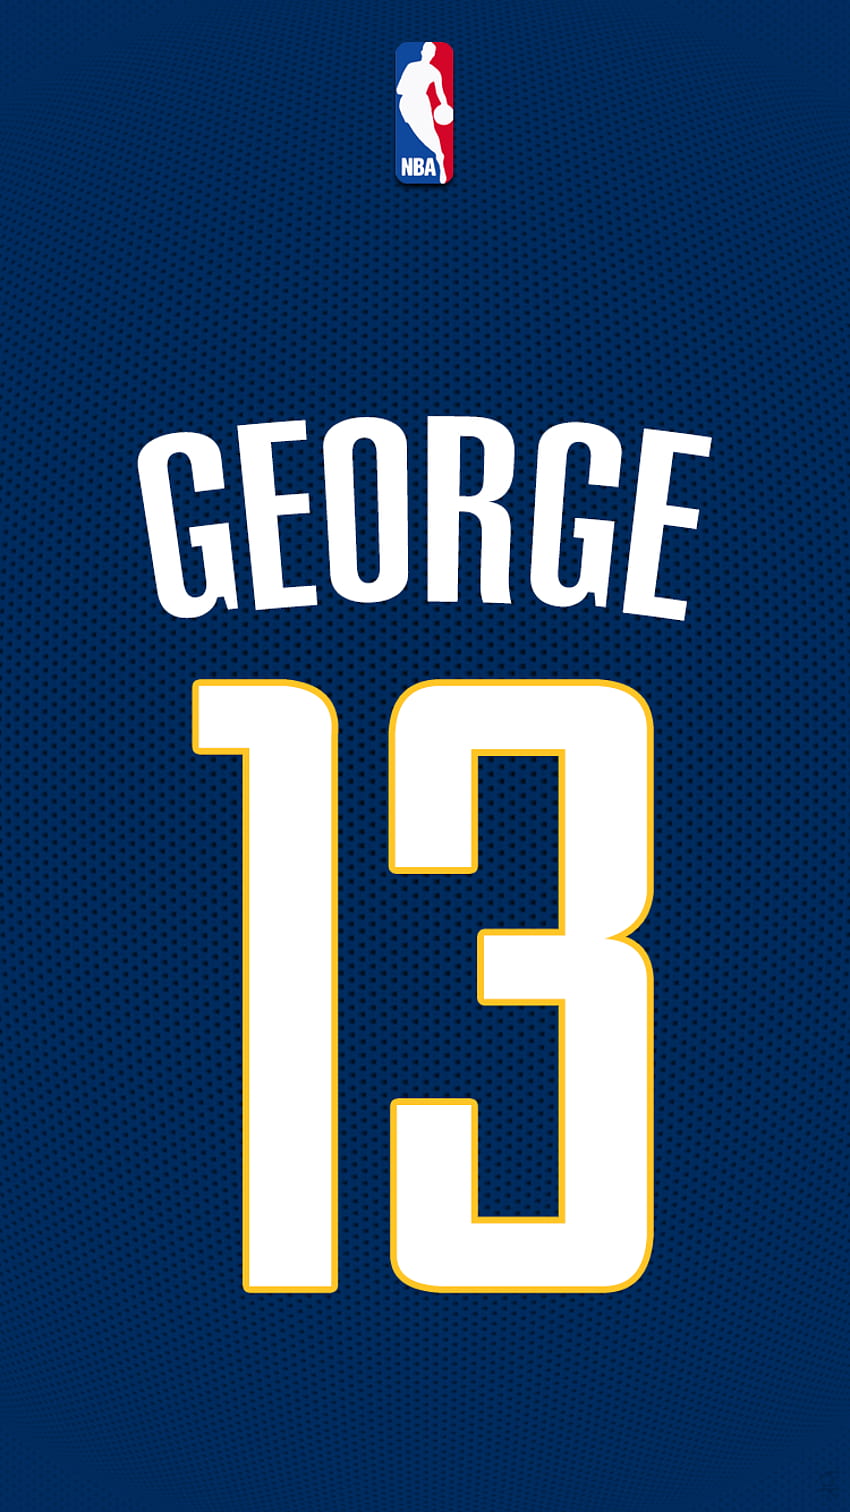 iPhone de Paul George - En vivo. Nba, Nba, ilustraciones de la NBA, logotipo de Paul George fondo de pantalla del teléfono